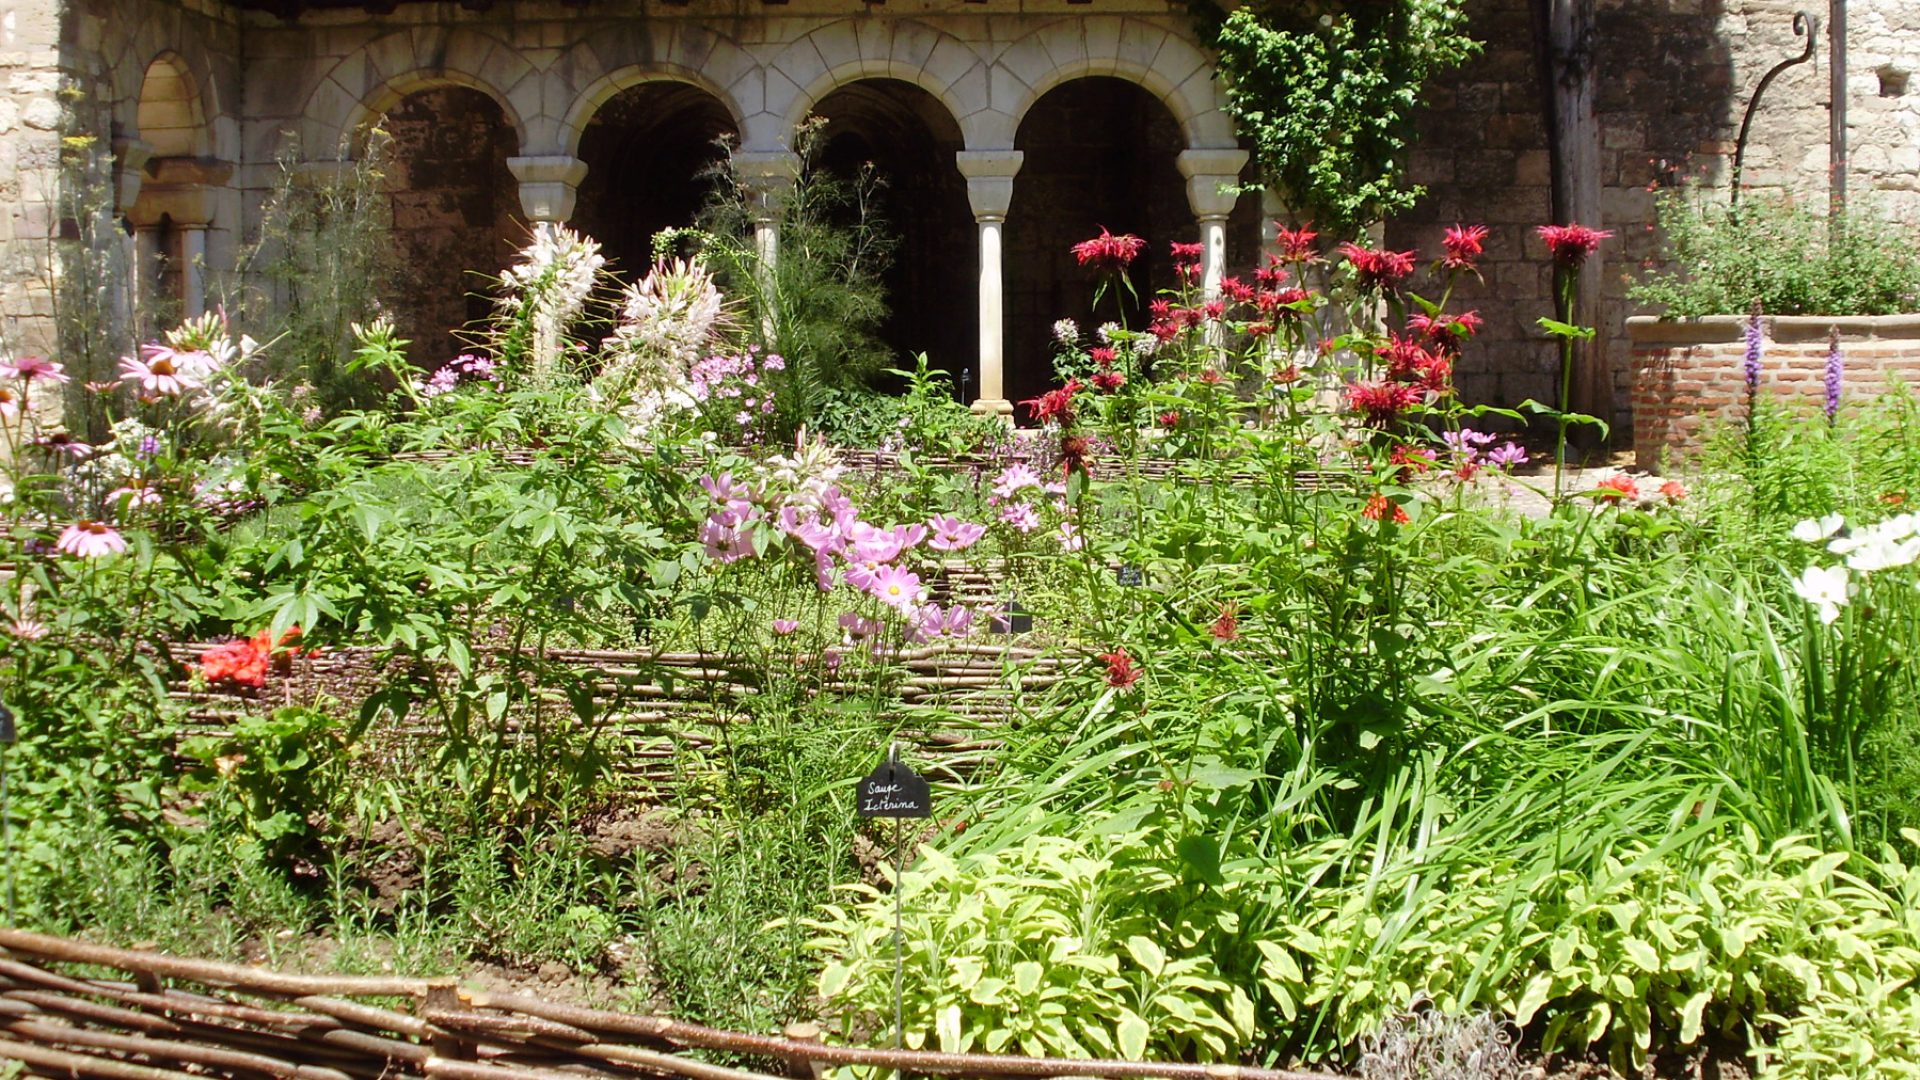 Albi De tuin van het klooster Saint-Salvi - de kruidentuin